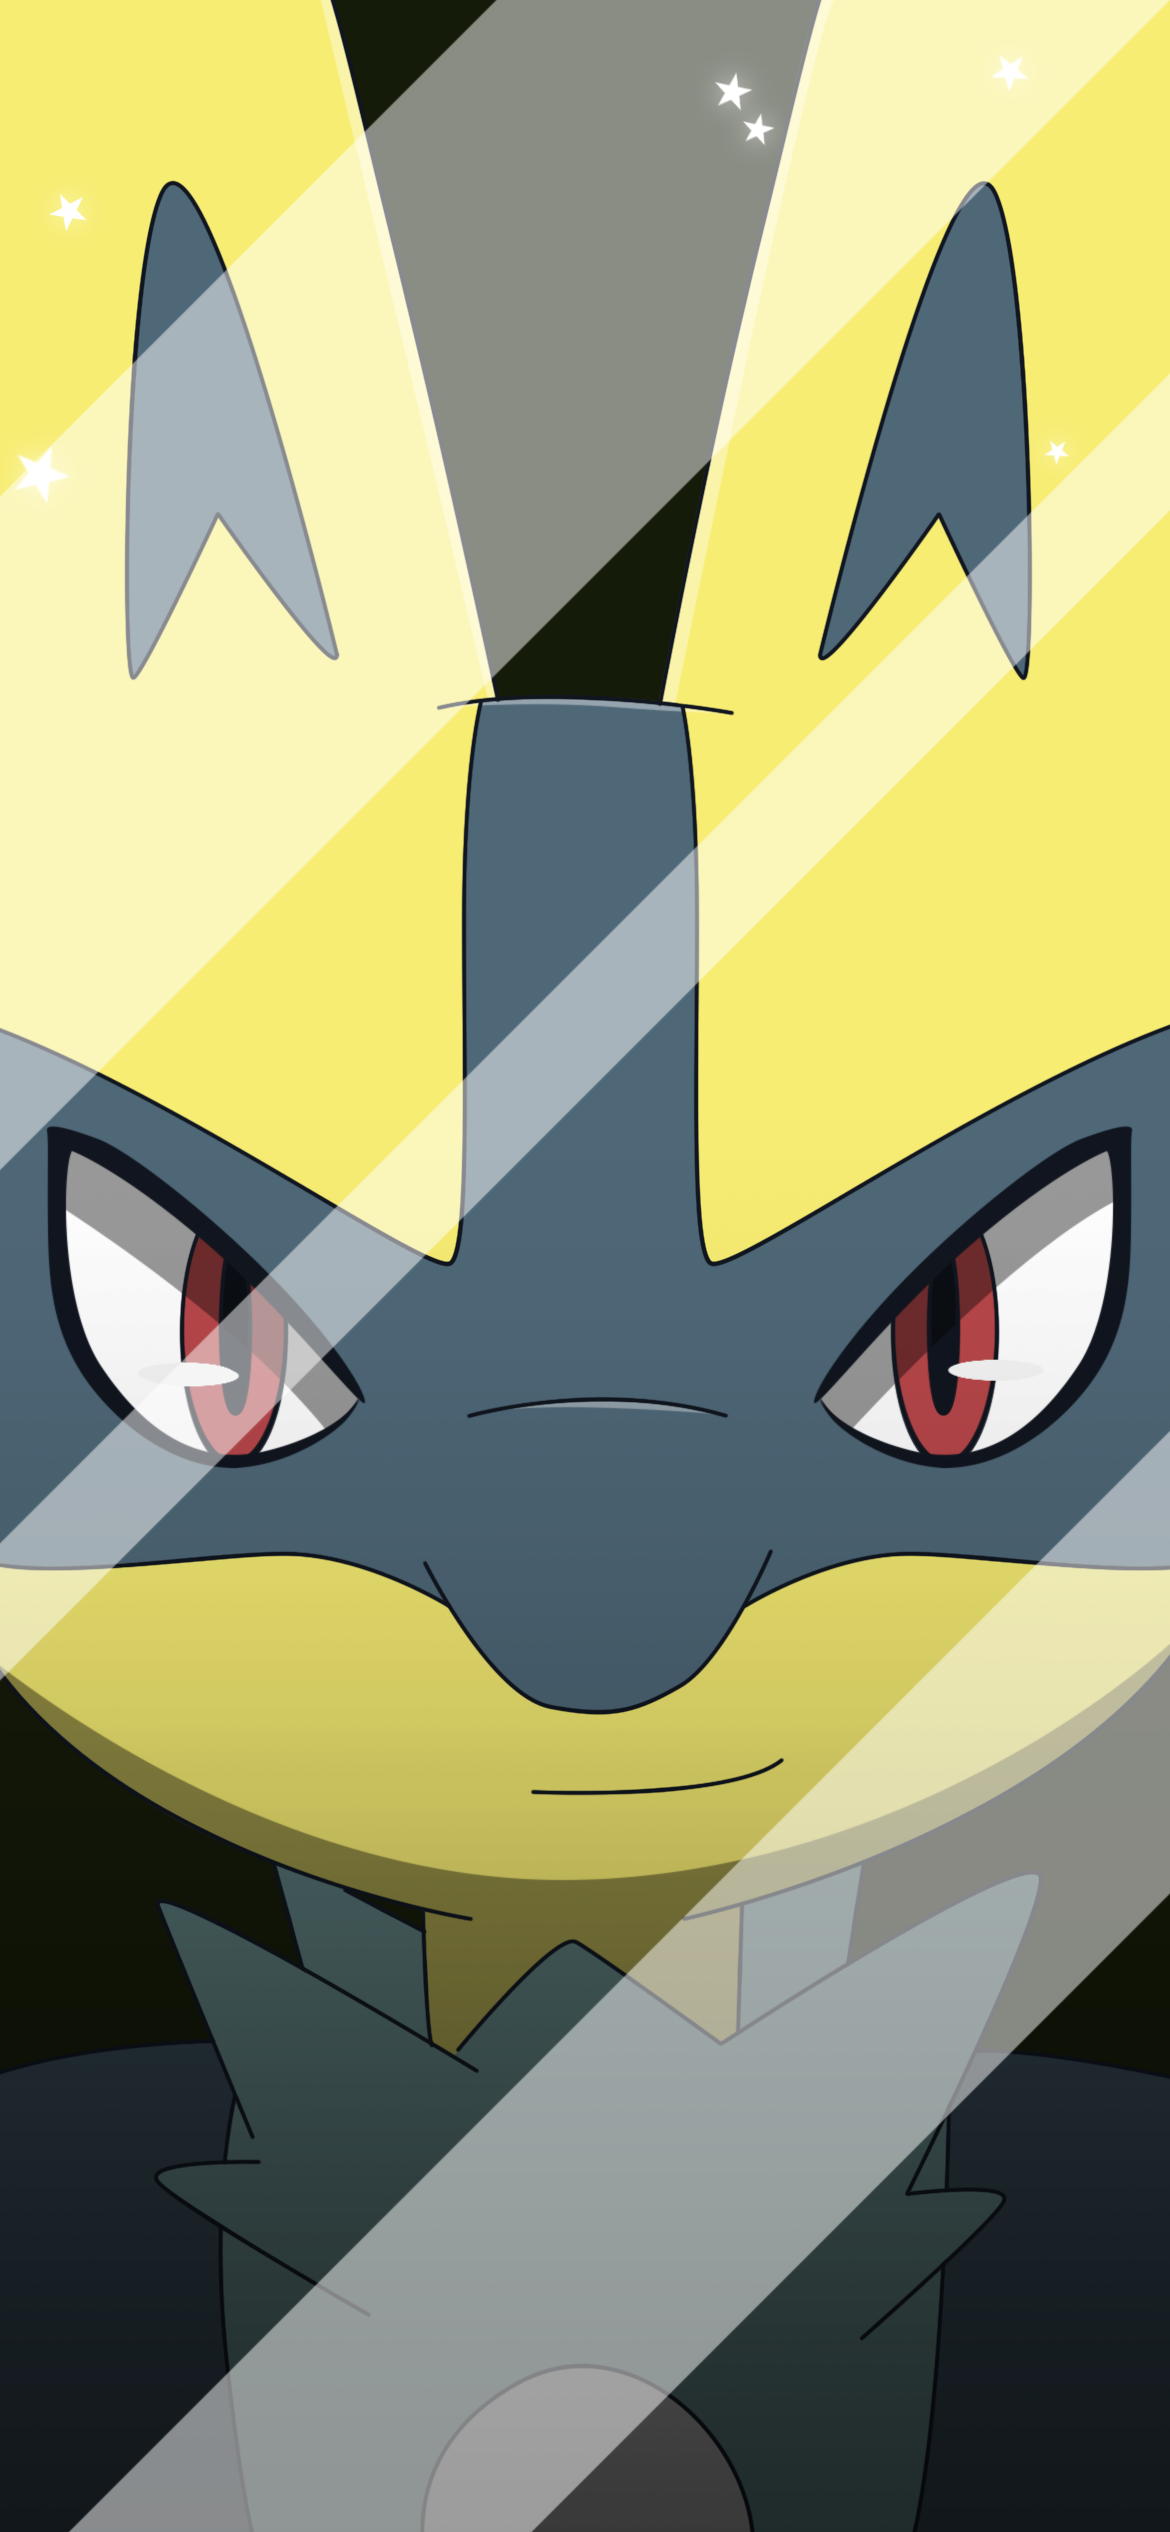 OC] Shiny Lucario with Master Rank! : r/pokemon